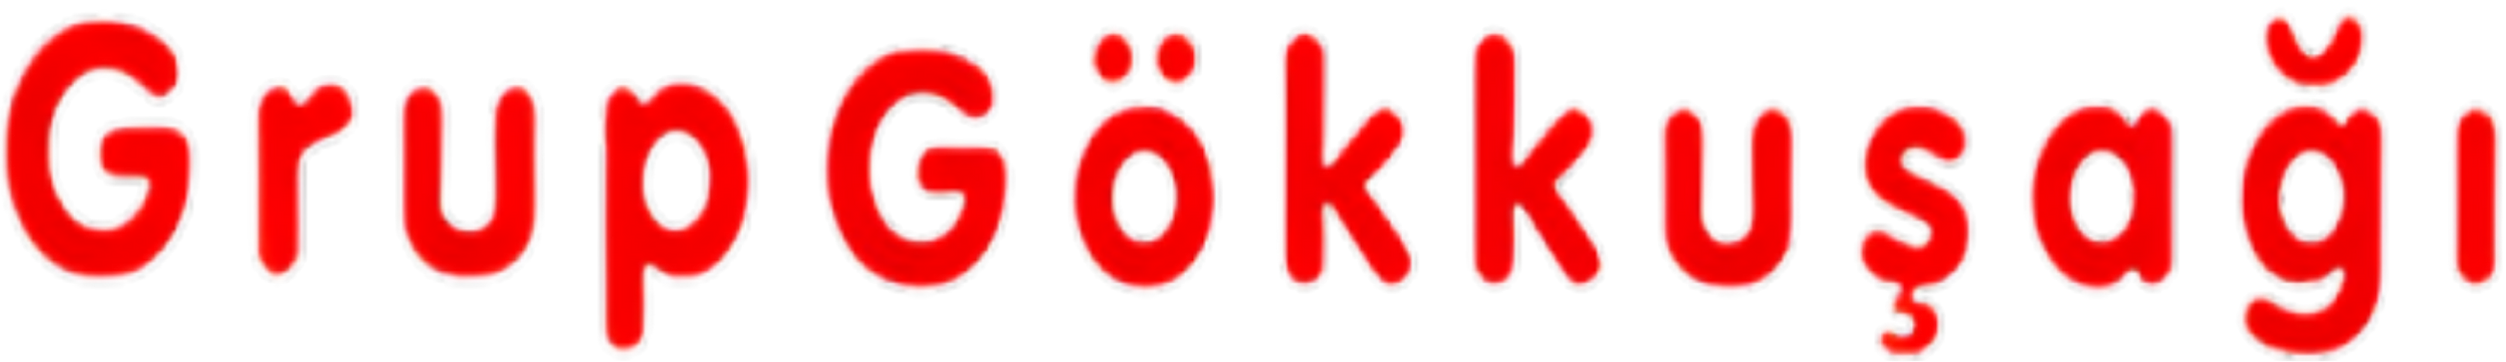 GRUP GÖKKUŞAĞI Logosu